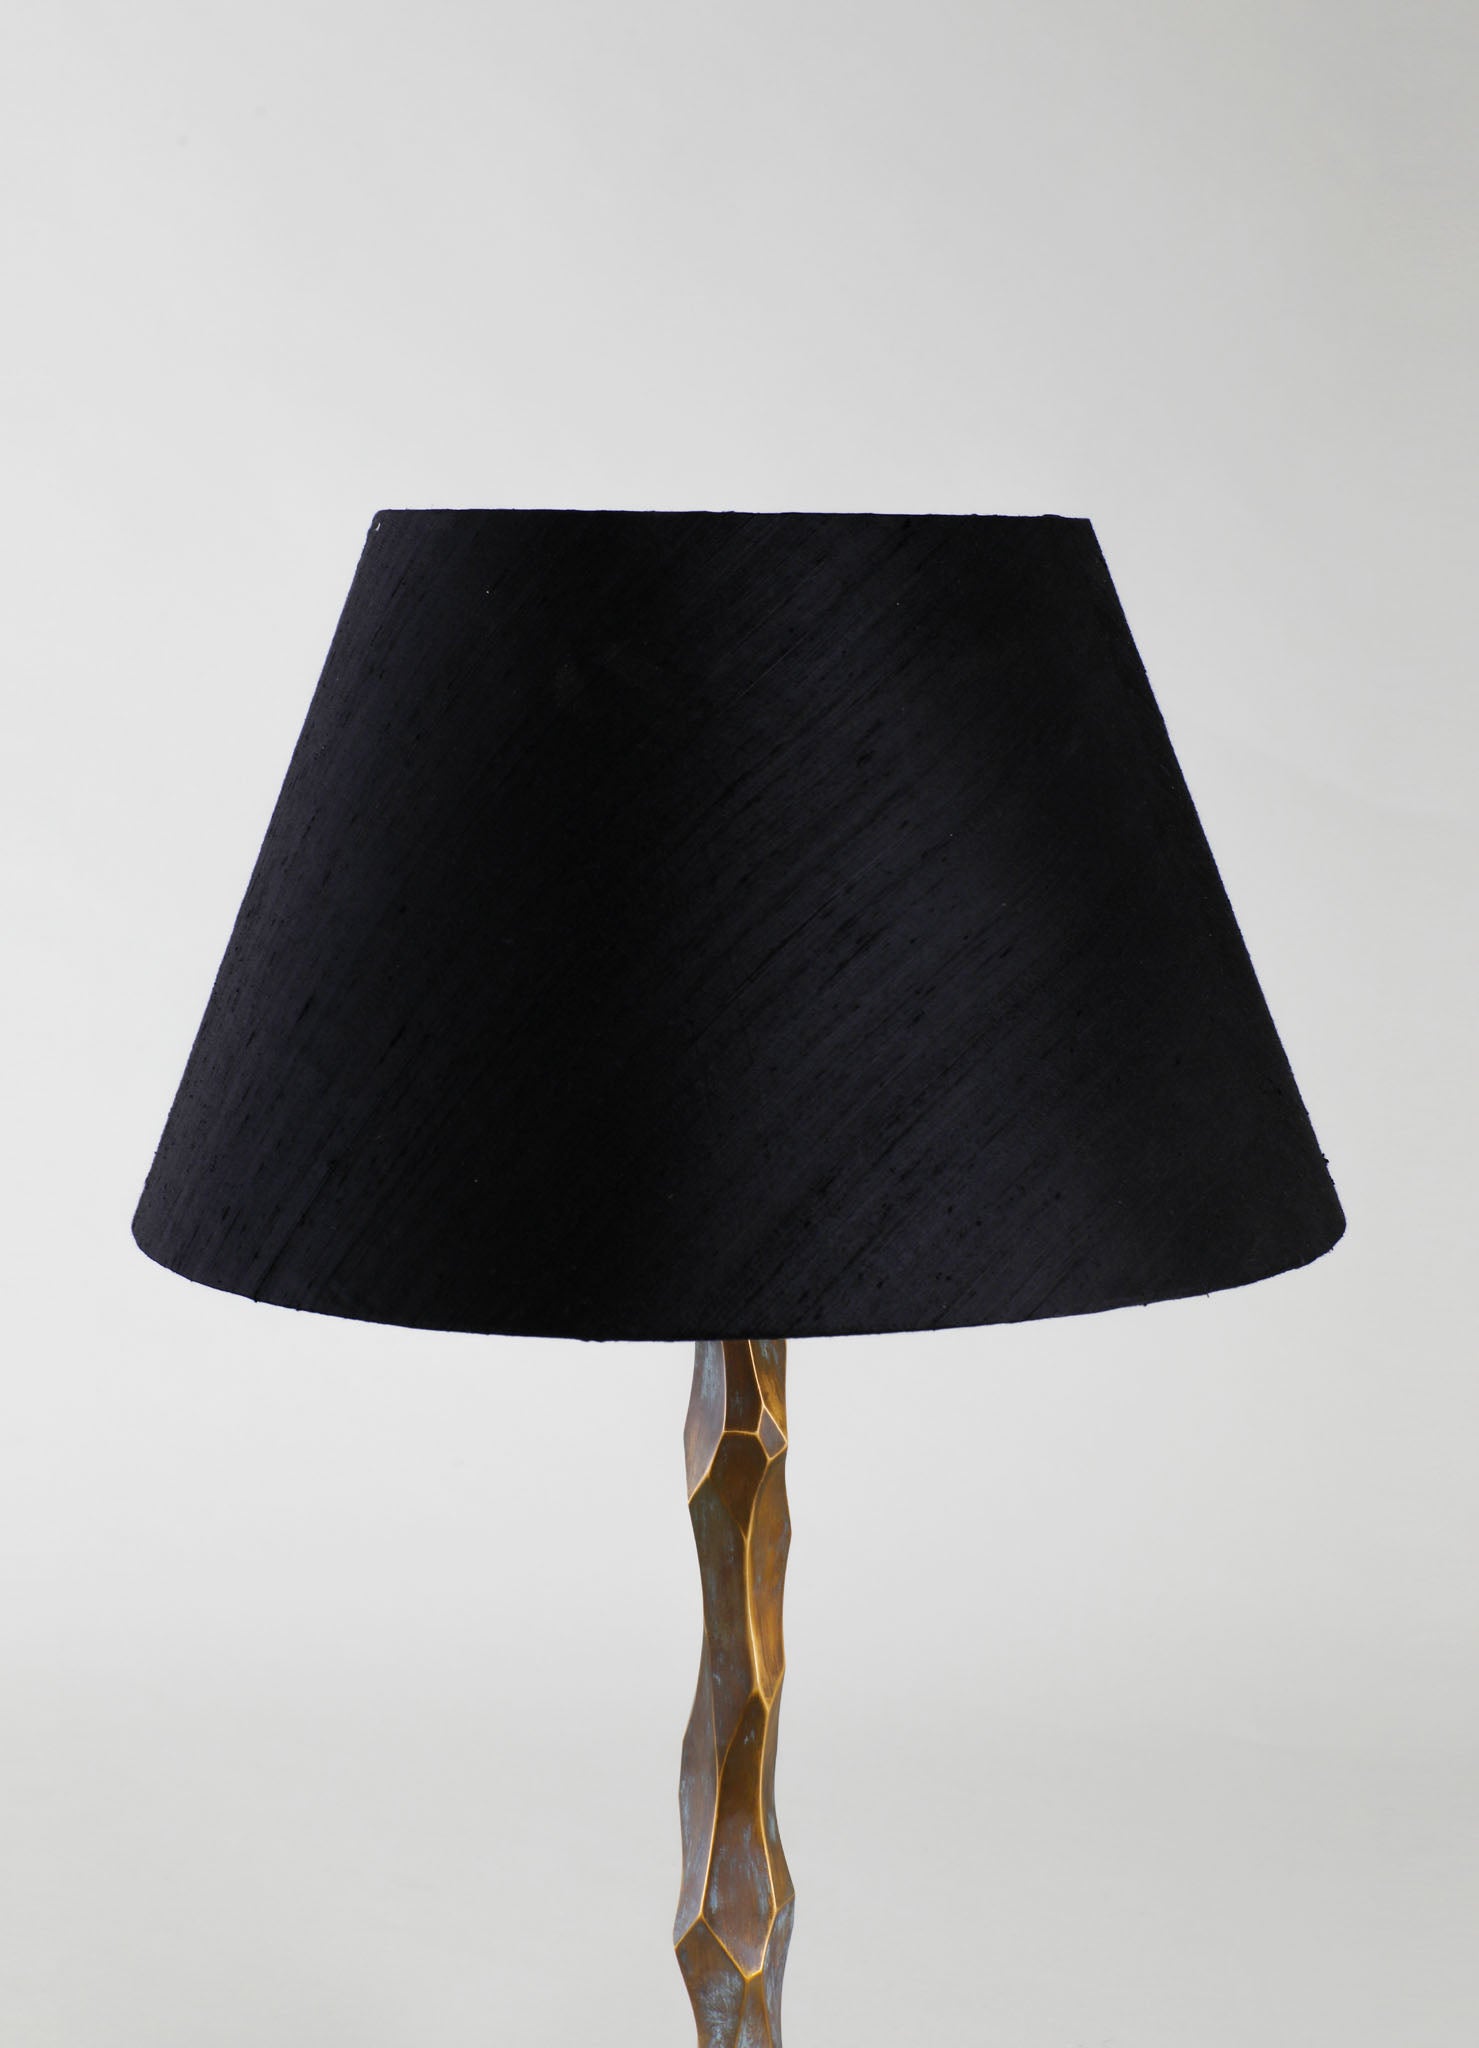 designer brass table lamps